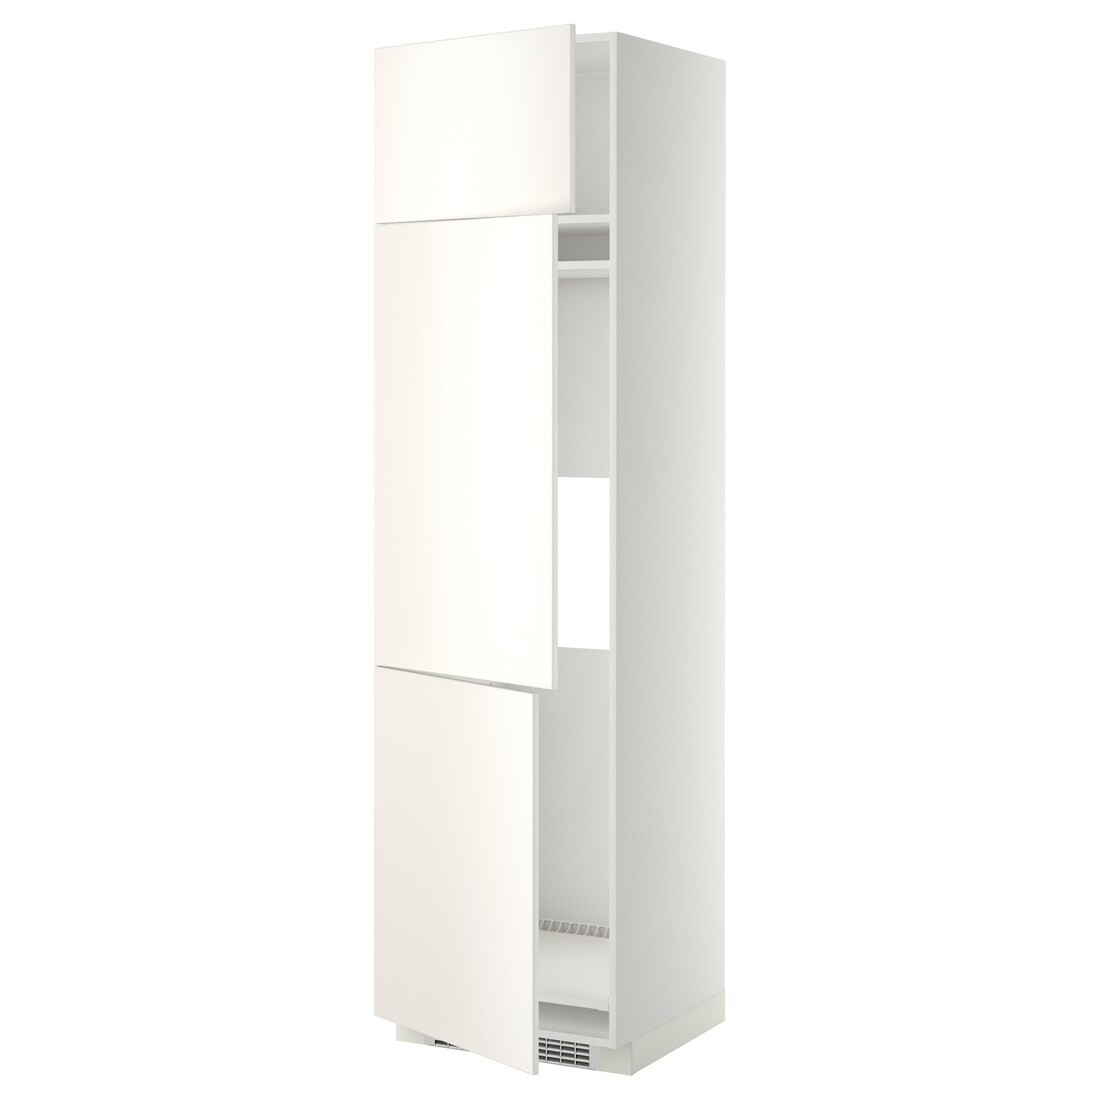 IKEA METOD МЕТОД Высокий шкаф для холодильника / морозильника / 3 дверцы, белый / Veddinge белый, 60x60x220 см 99463911 994.639.11